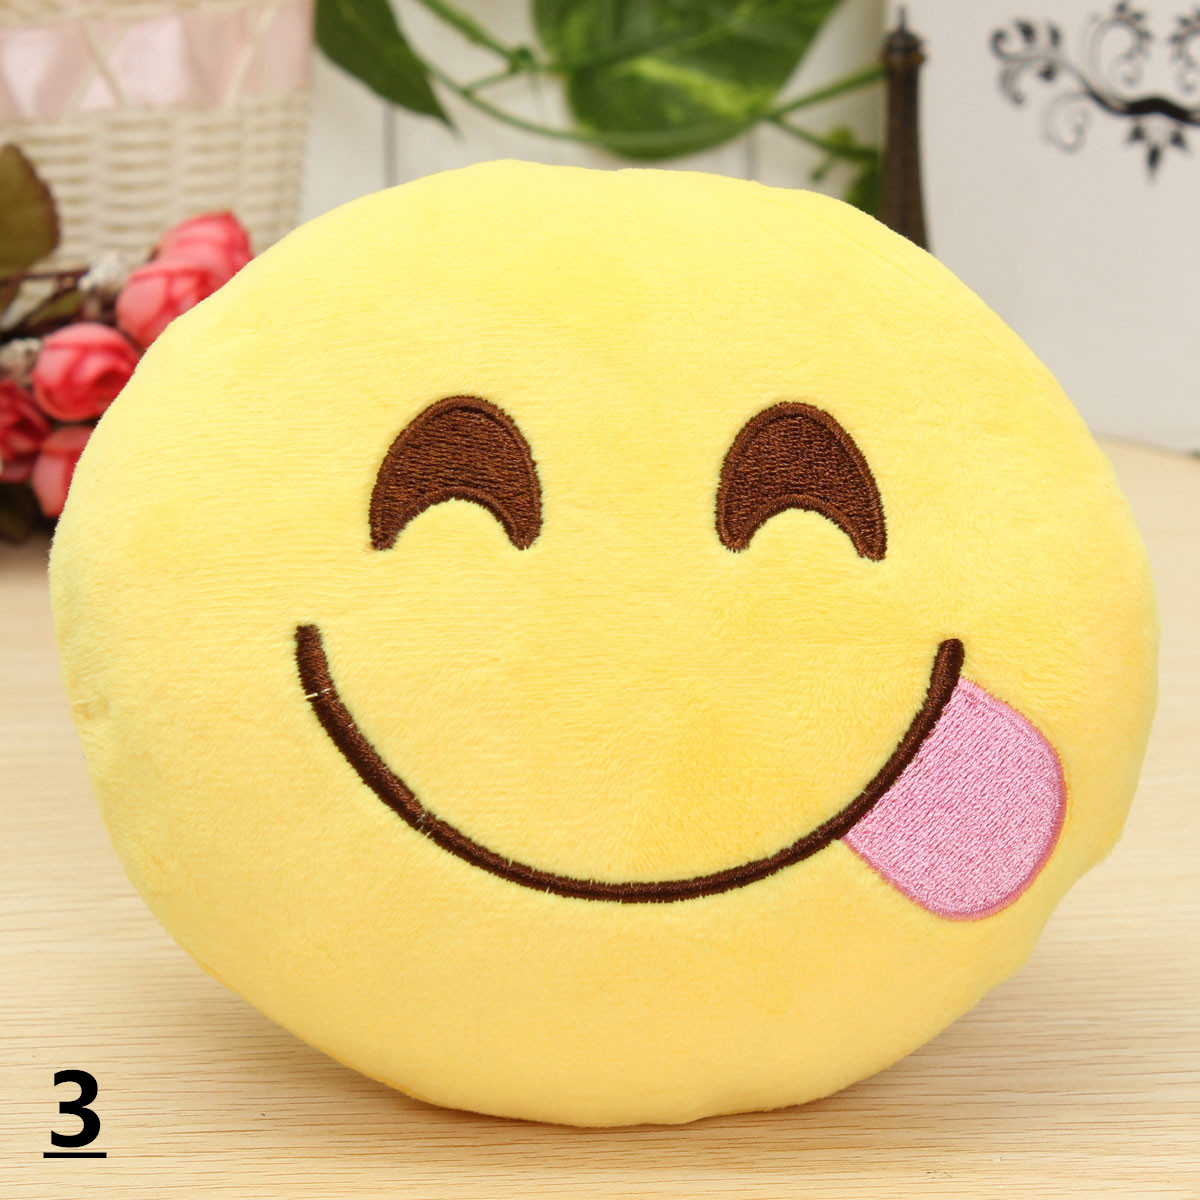 59-15cm-Emoji-Smiley-Emoticon-Stuffed-Plush-Soft-Toy-Round-Cushion-Ornament-Decor-Gift-1133560